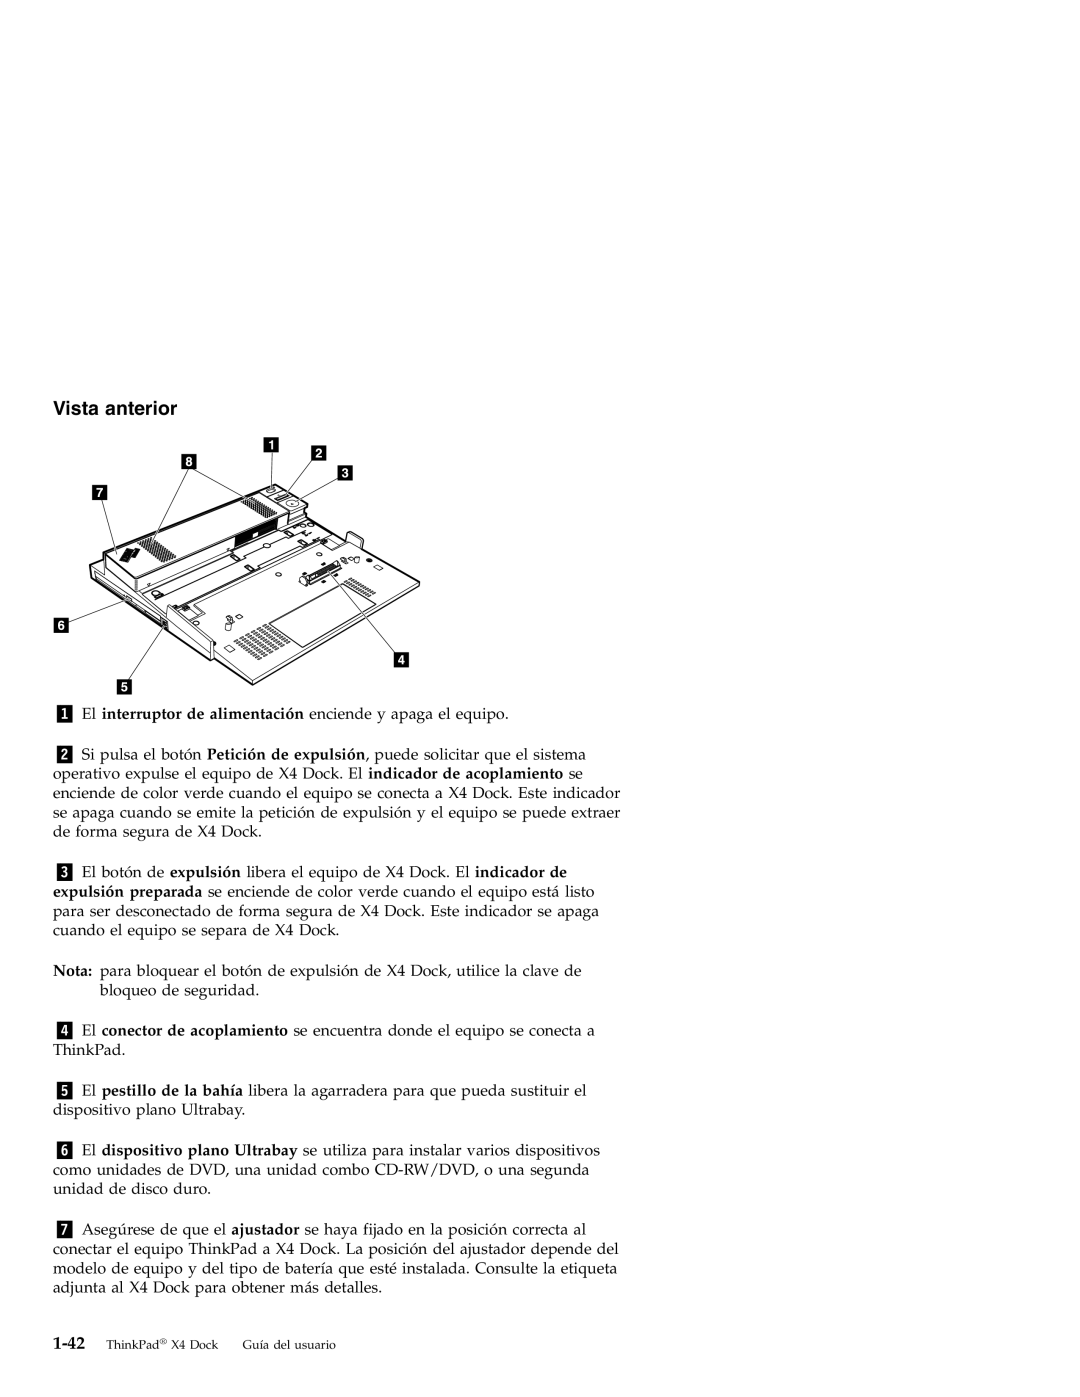 IBM X4 manual Vista anterior 